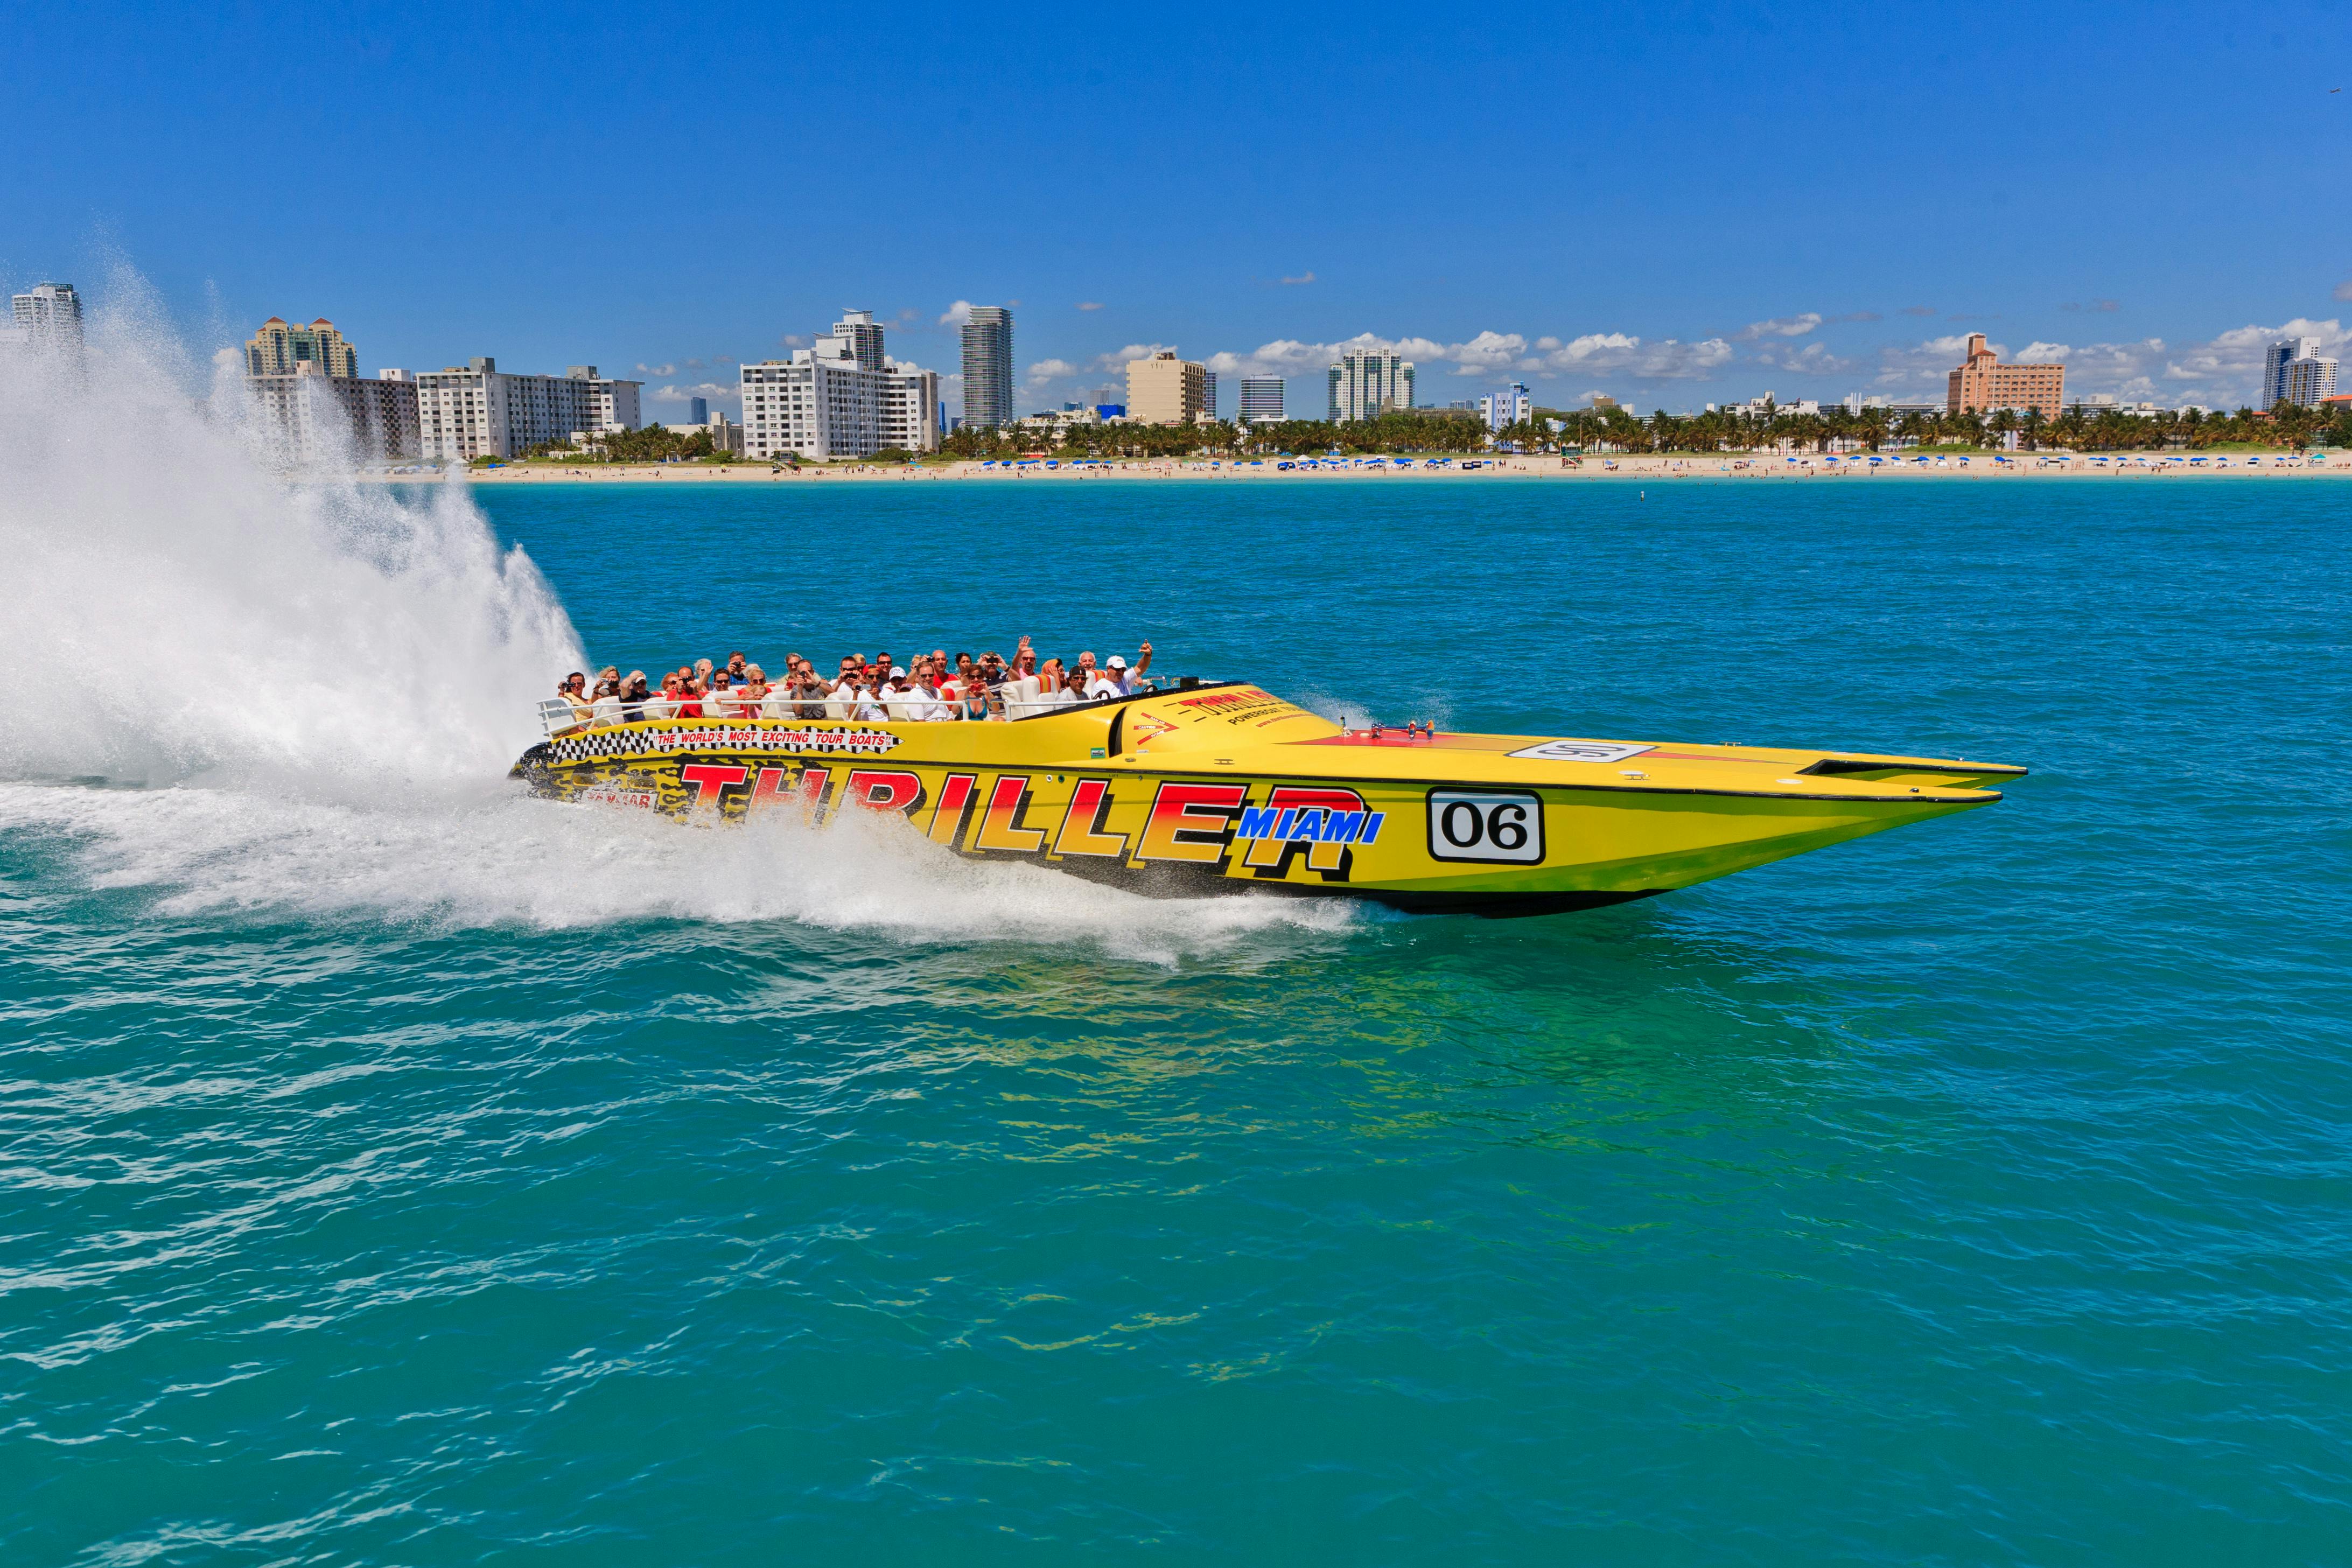 Thriller Miami speedboat tour Musement